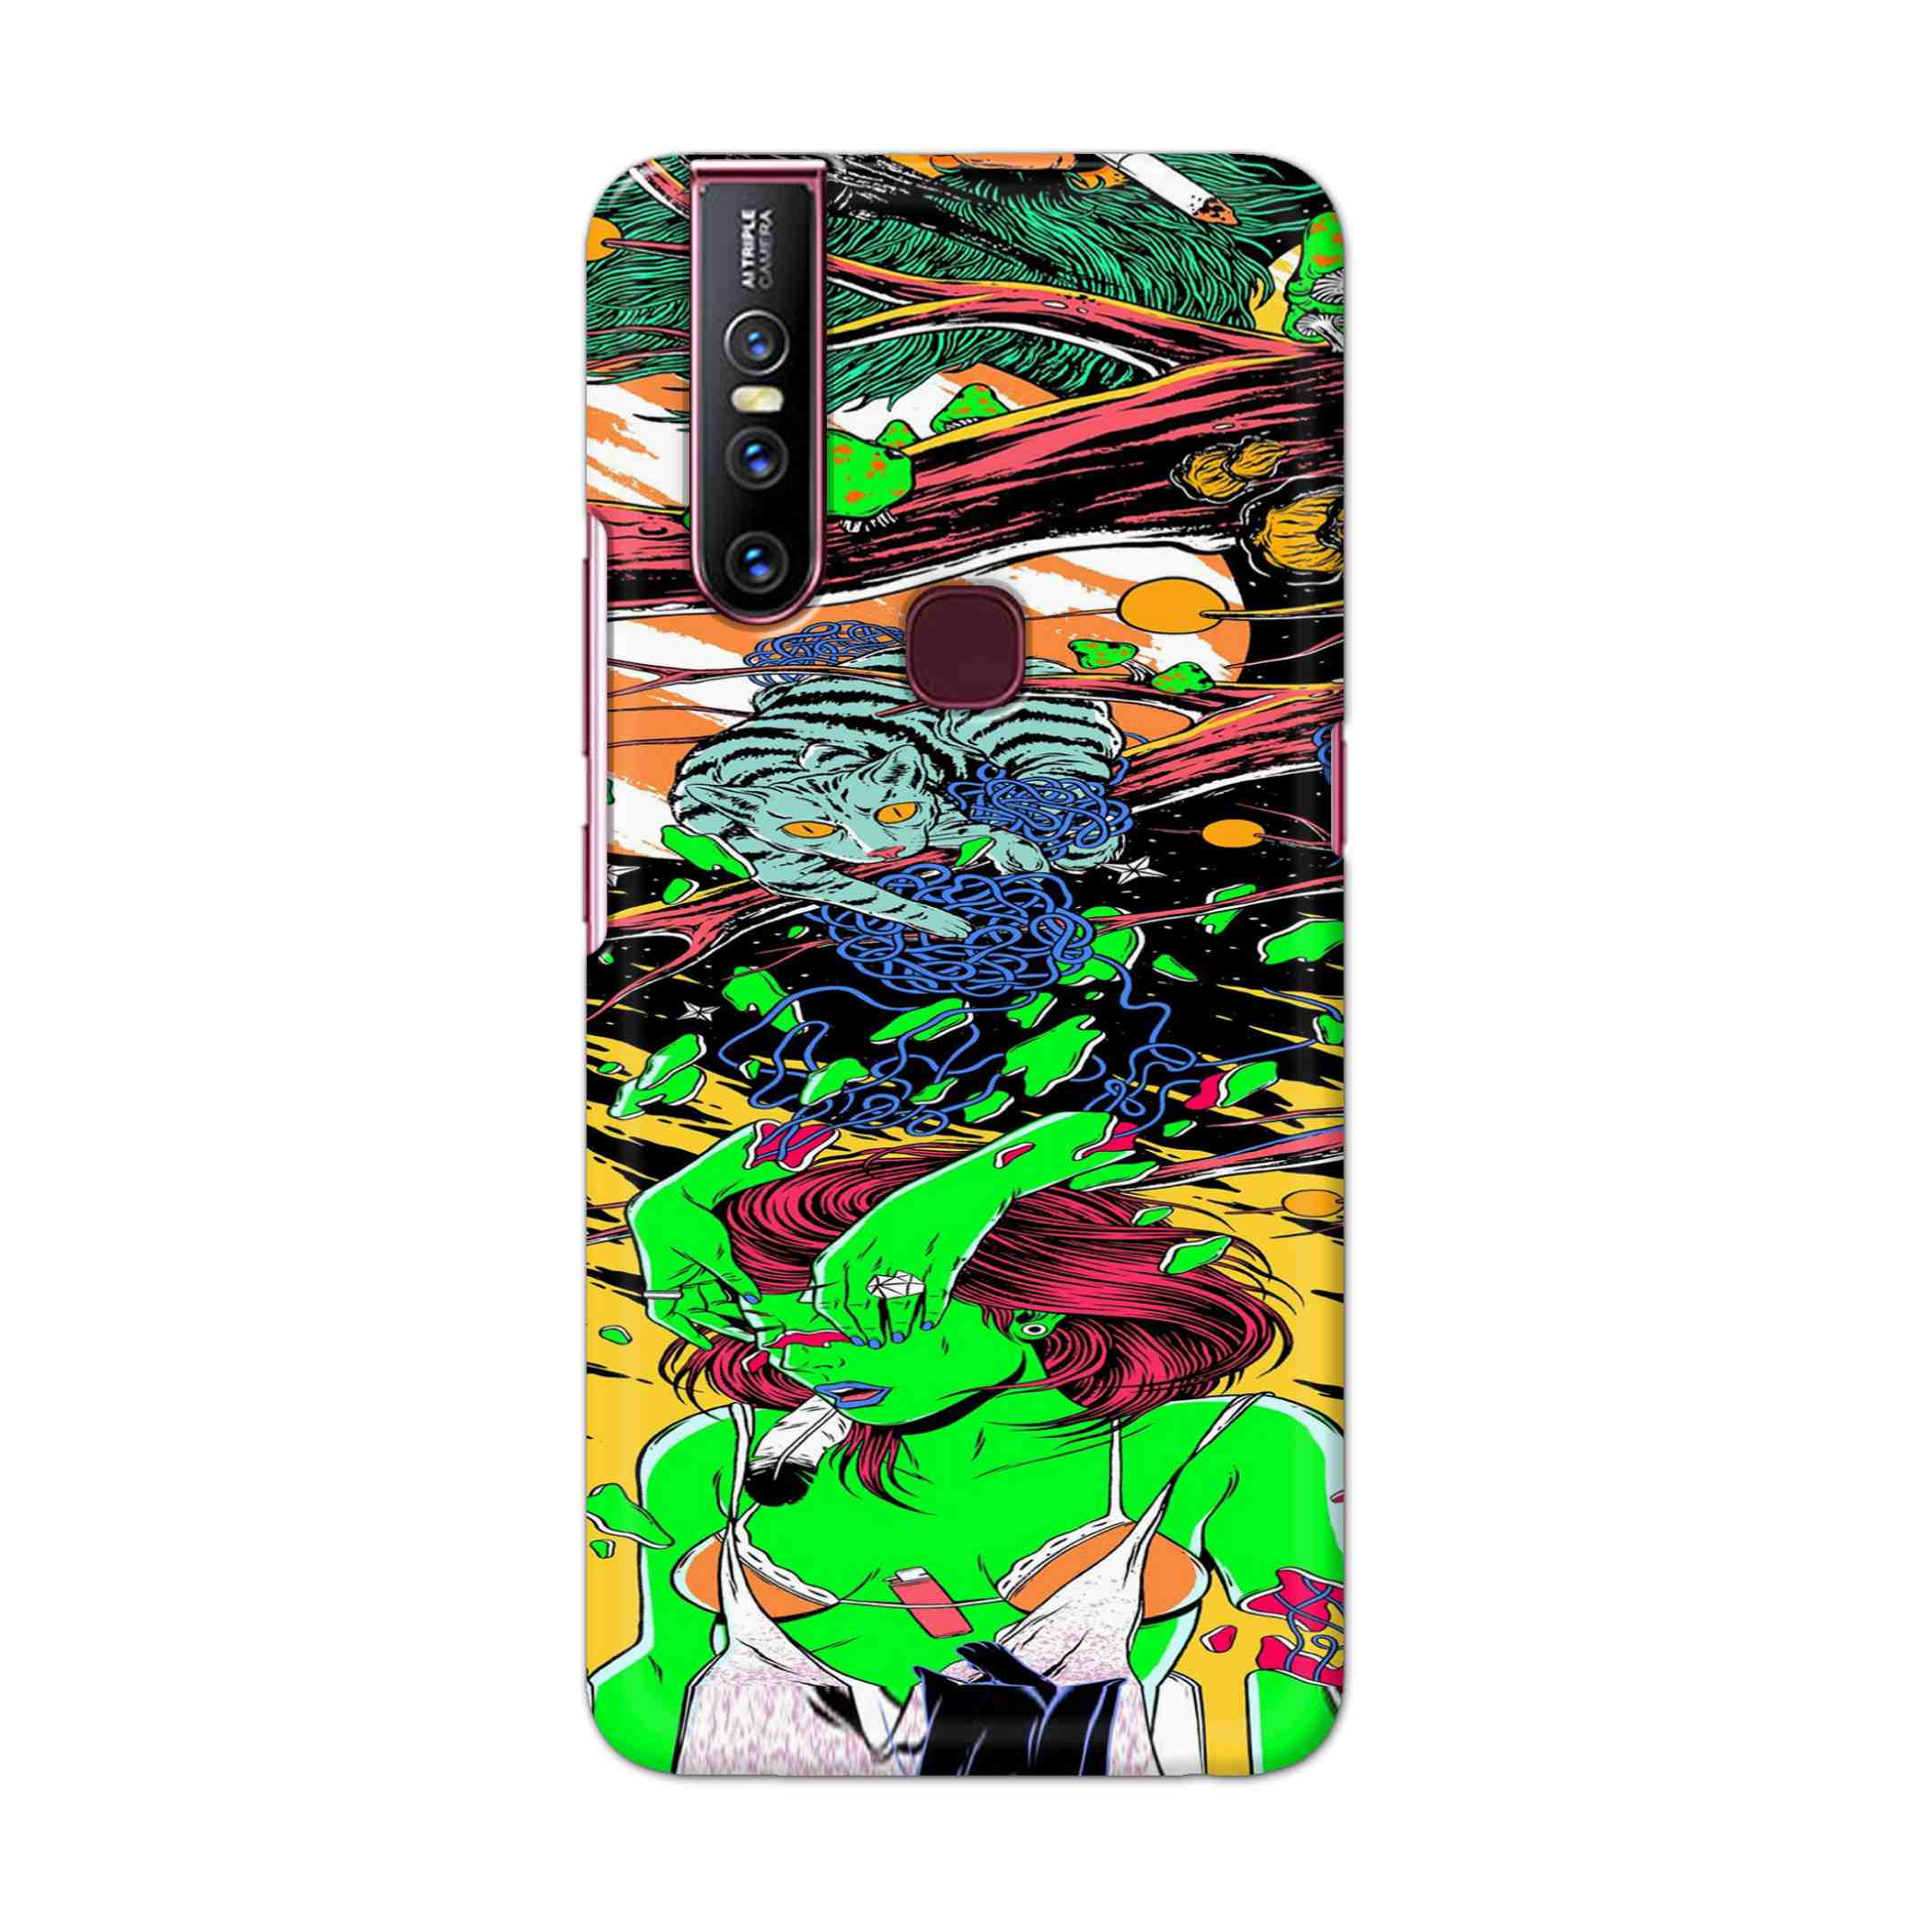 Buy Green Girl Art Hard Back Mobile Phone Case Cover For Vivo V15 Online